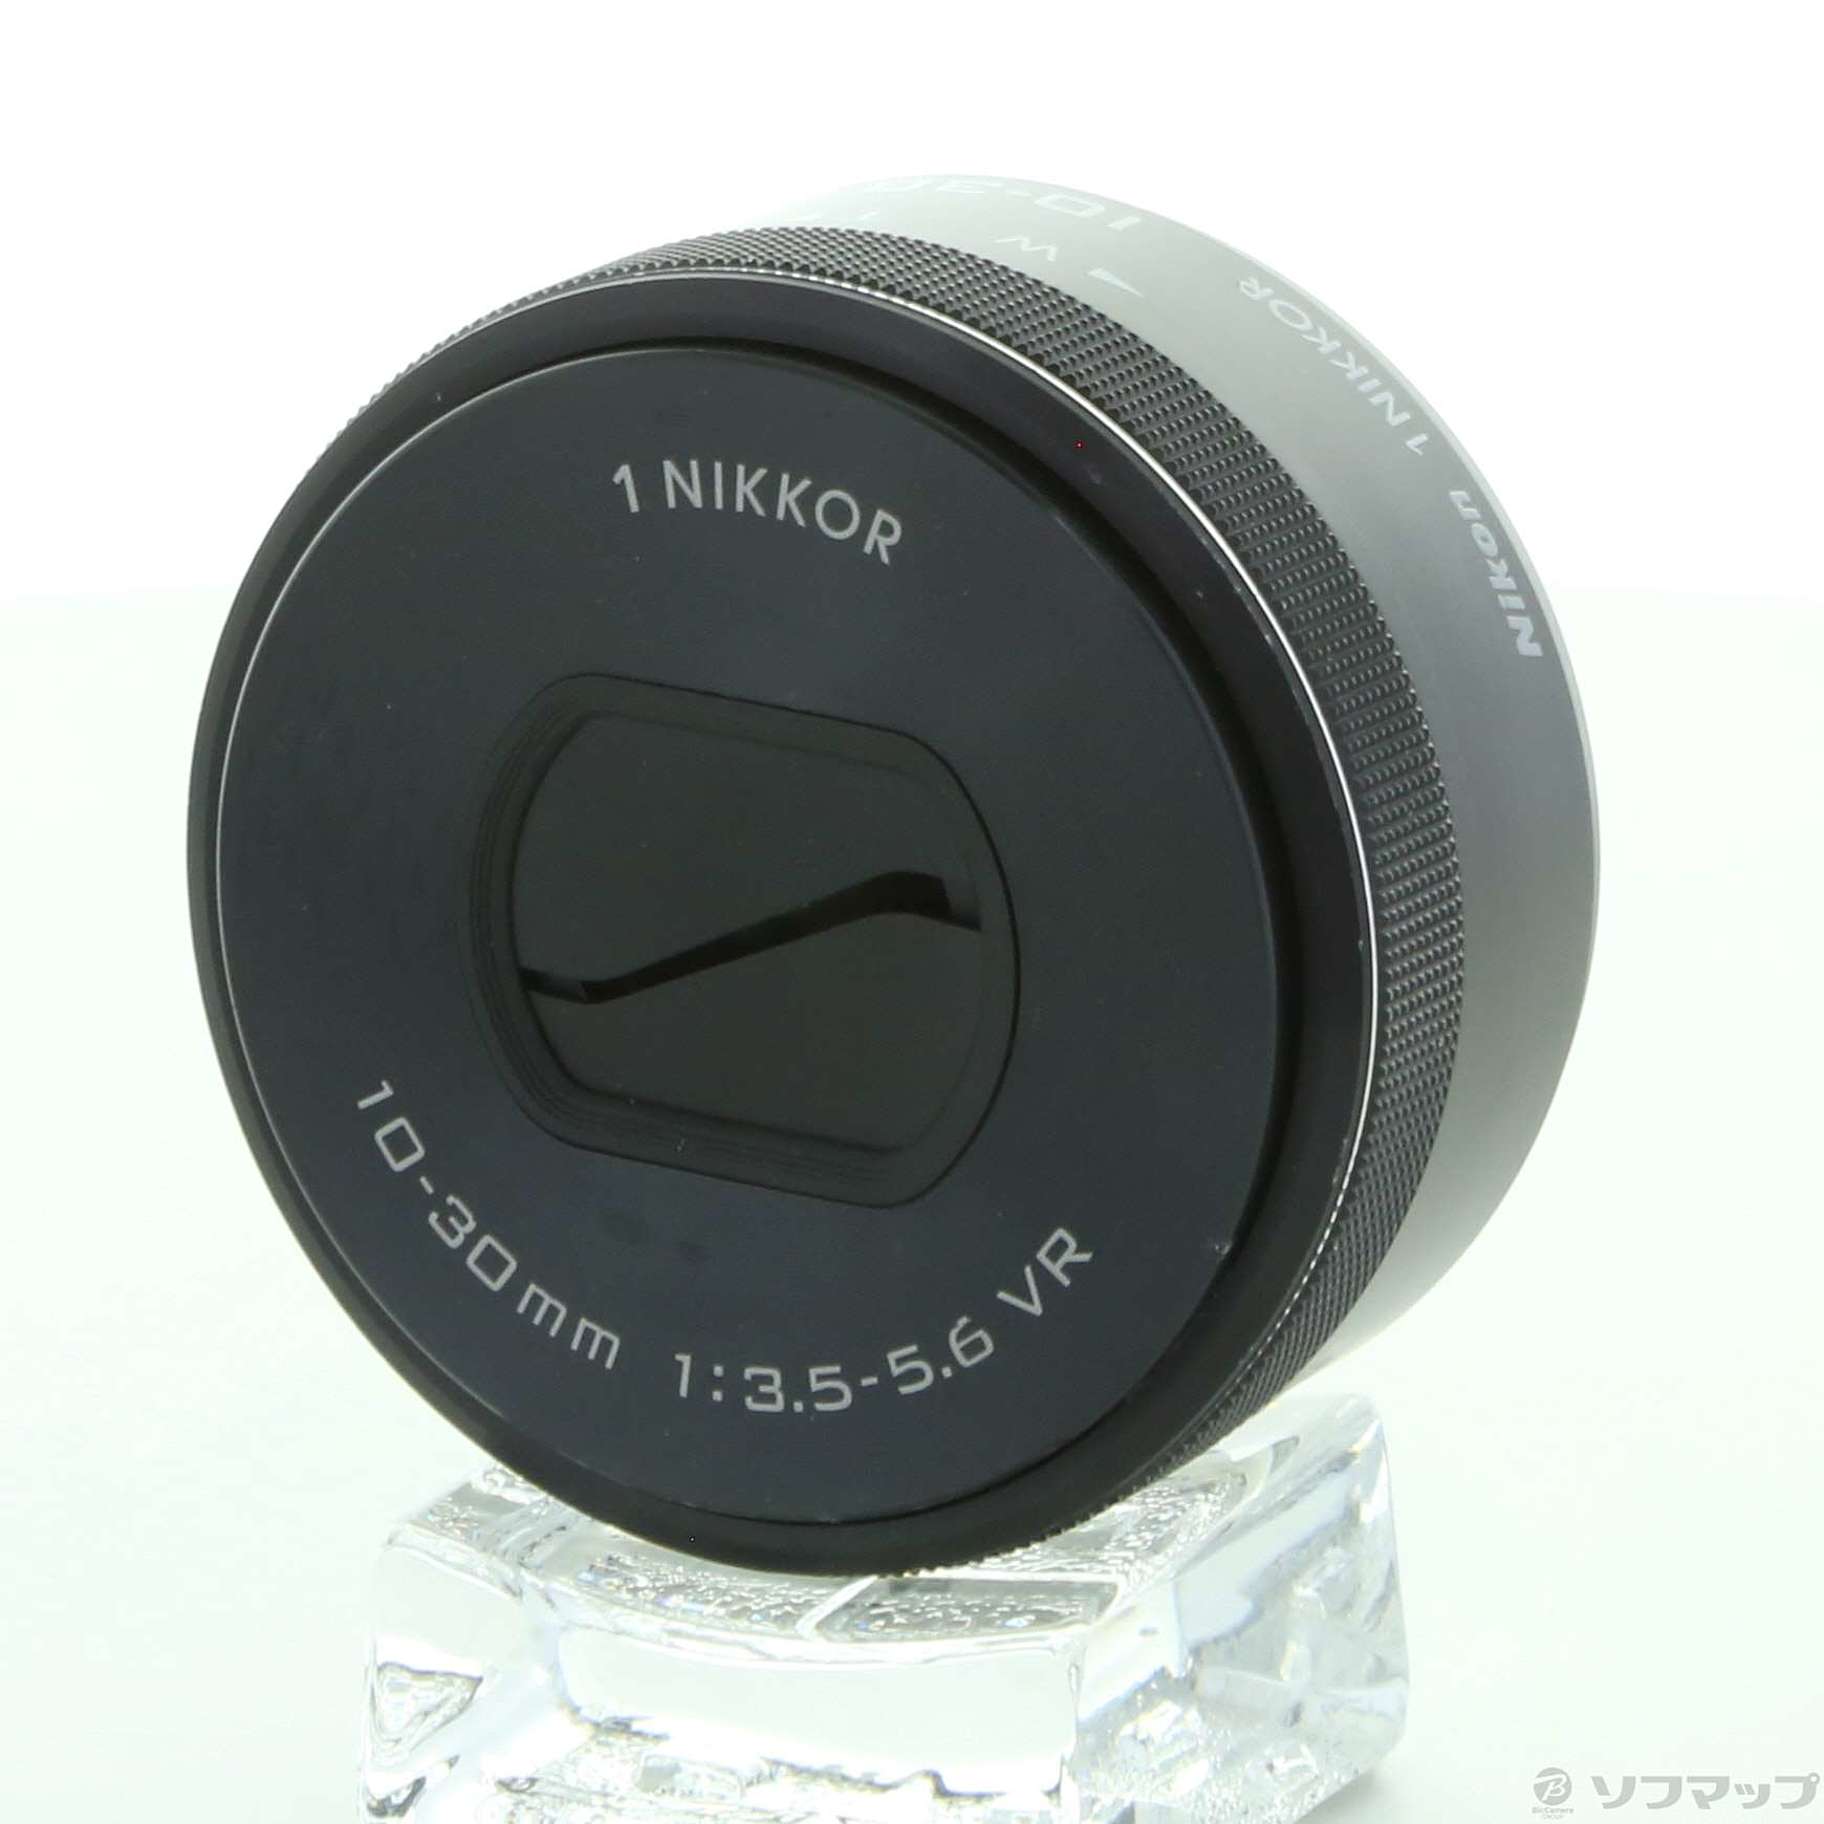 ニコン Nikon 1 NIKKOR (ワンニッコール) VR 10-30mm f/3.5-5.6 シルバー-